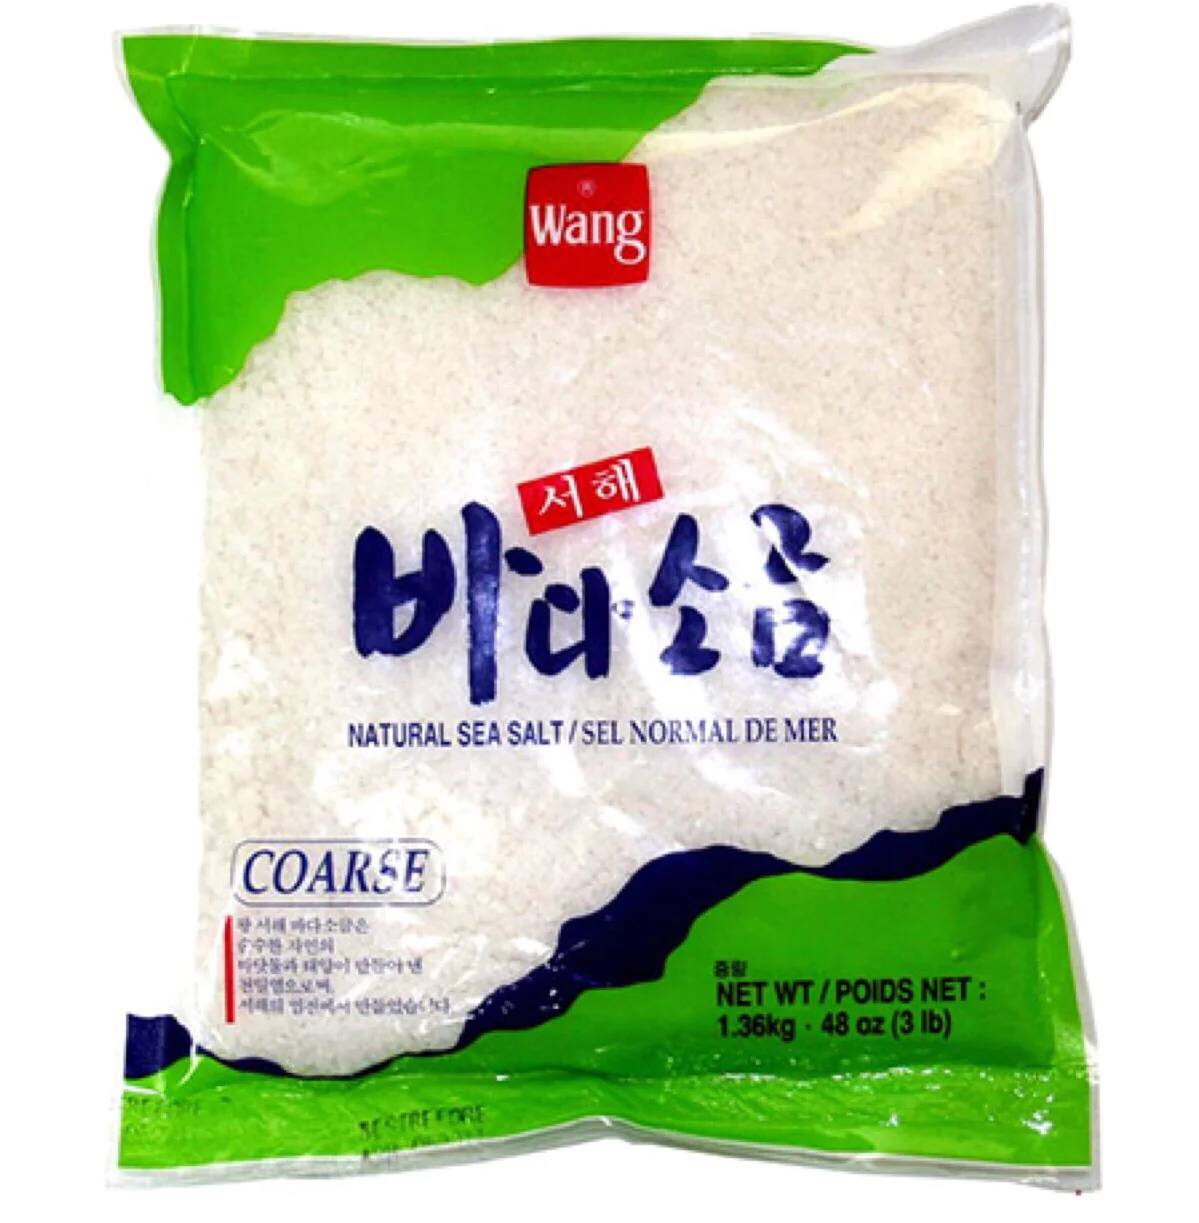 Wang Korean Sea Salt in Pack - Coarse 1.36kg